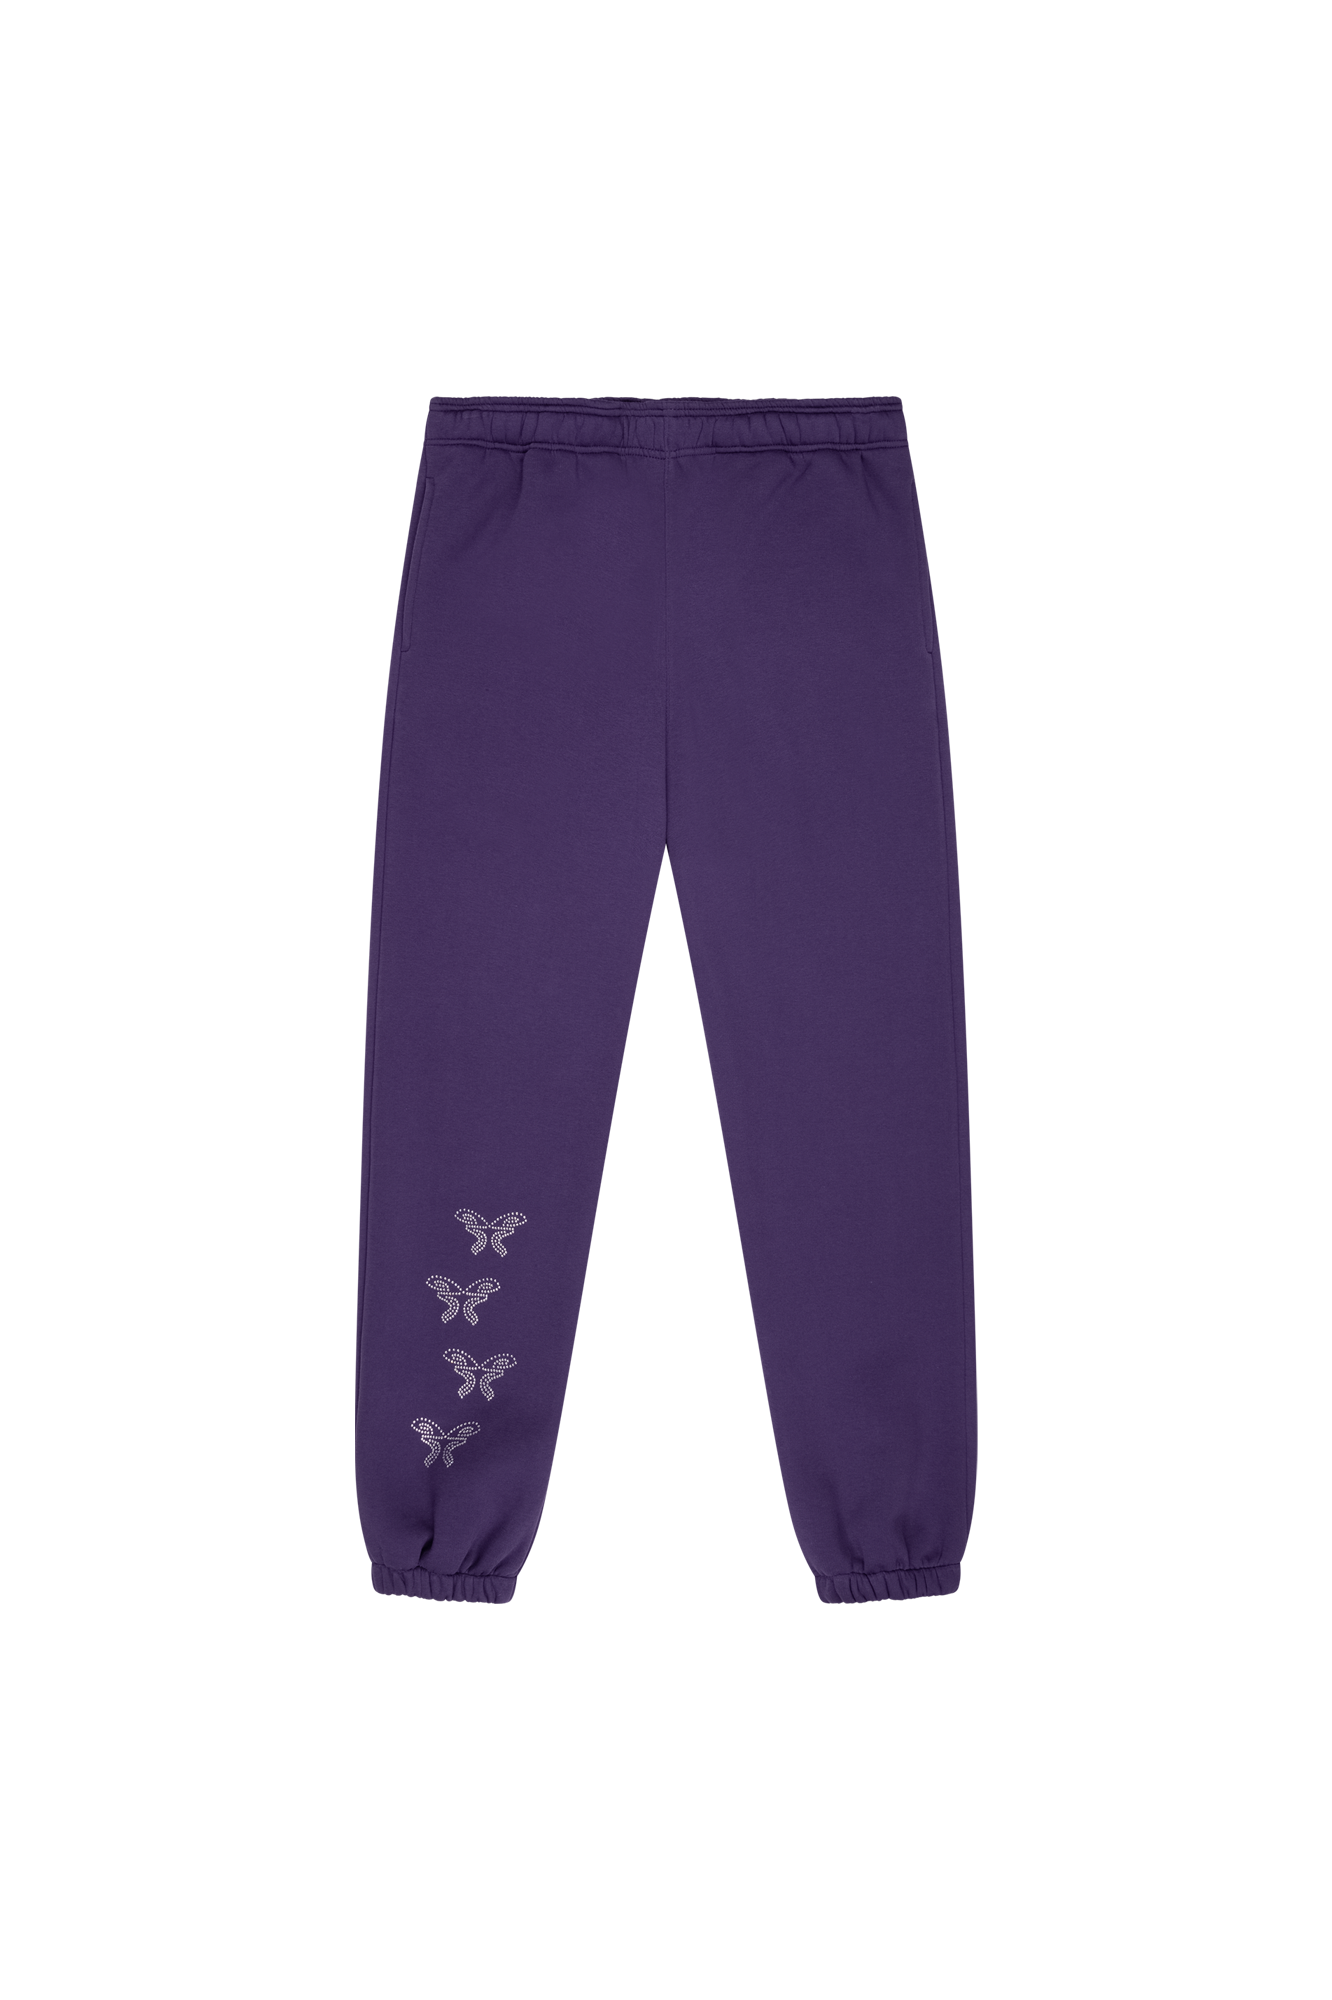 Rhinestones Sweatpants Purple